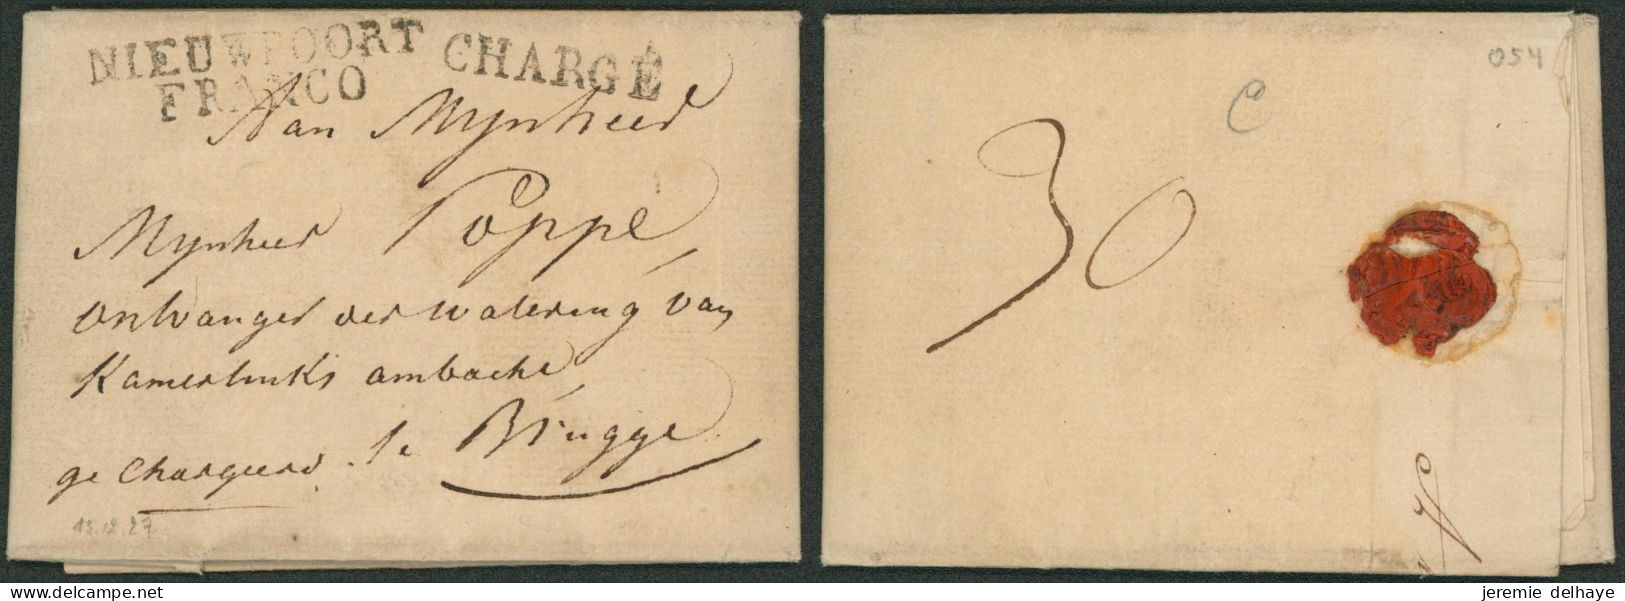 LAC Daté De Nieuport (1827) + Obl Linéaire Noir NIEUWPOORT / FRANCO (R) & Chargé > Brugge. Combinaison !! - 1815-1830 (Hollandse Tijd)